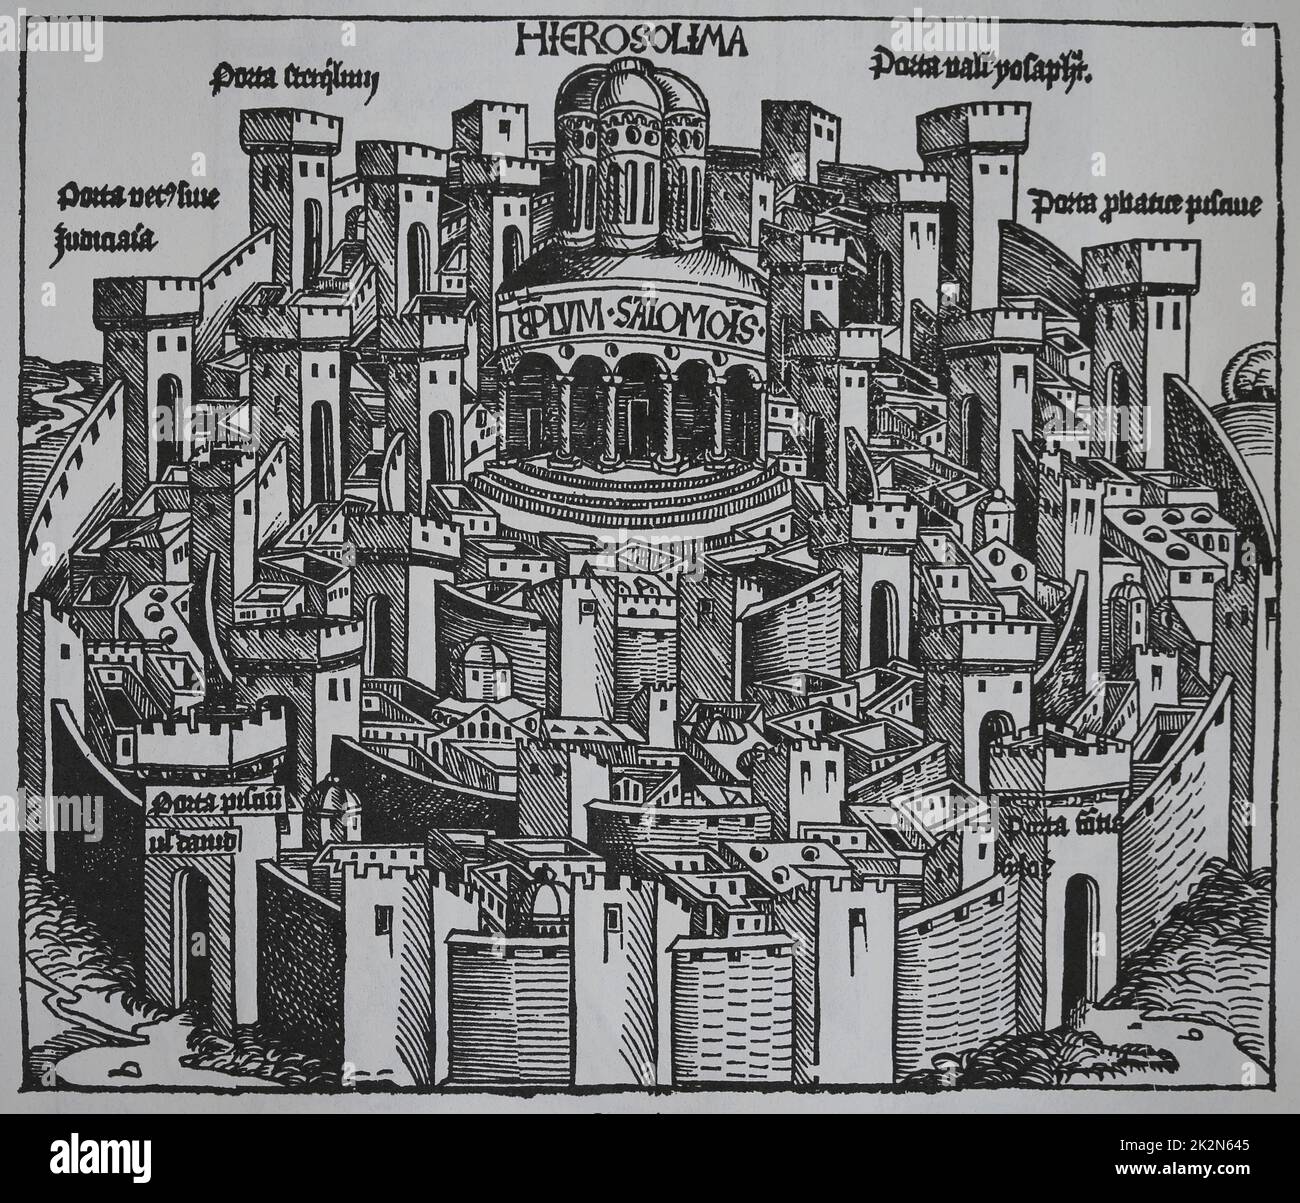 La Edad Media. Tierra Santa. Jerusalén (Hierosolima). Las Crónicas de Nuremberg. siglo 15th. Foto de stock